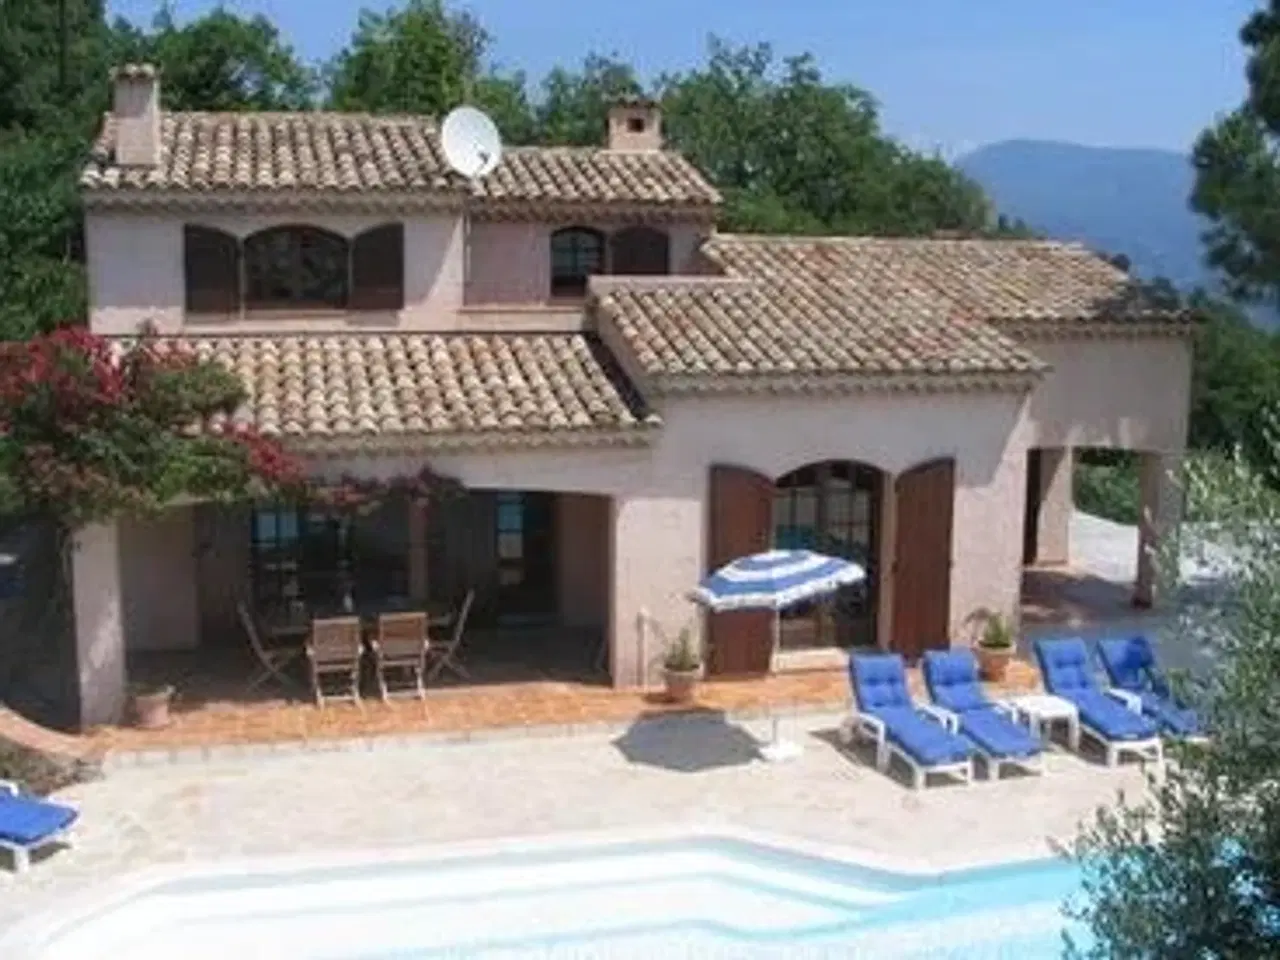 Billede 1 - Sommerhus til 8 personer med stor pool og fantastisk udsigt til leje i Provence.